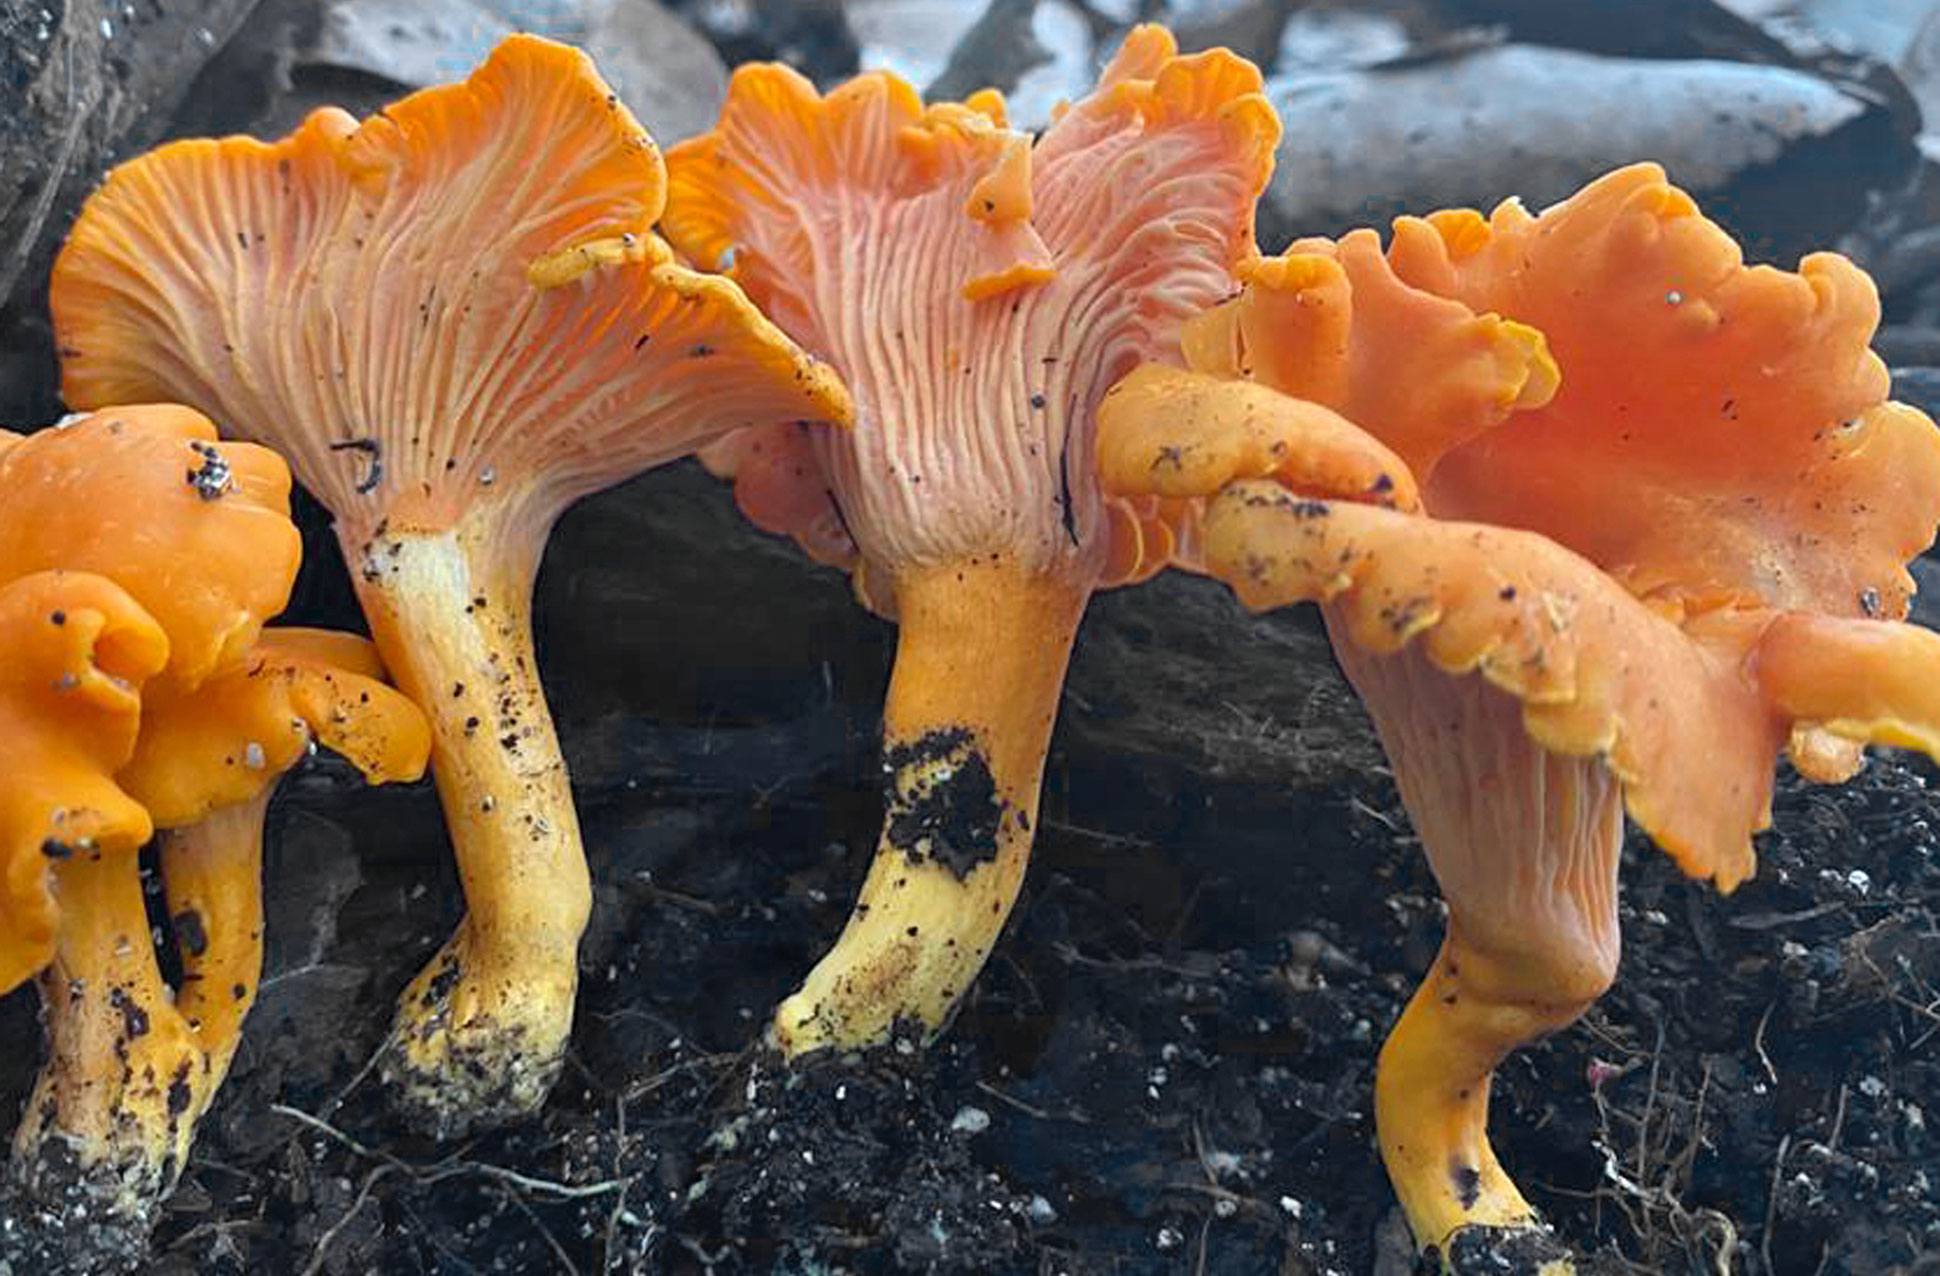 Four orange yellow fungi